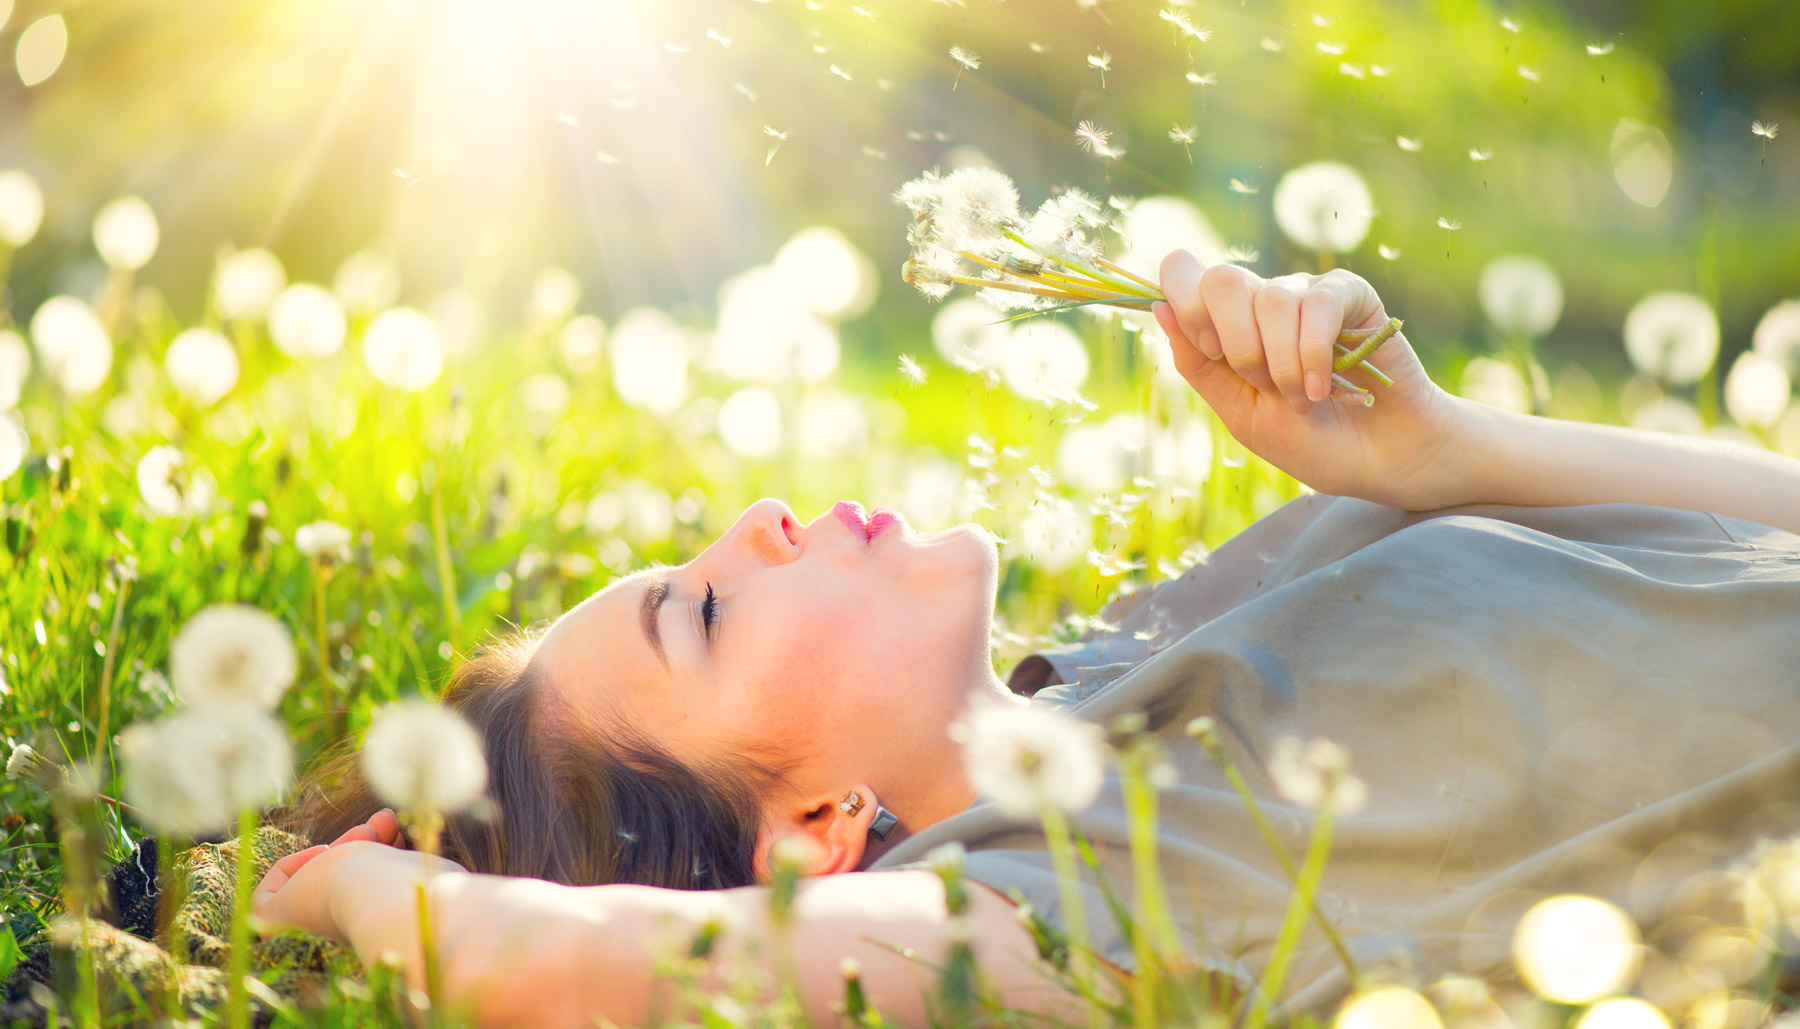 Woman lying in field of dandelions